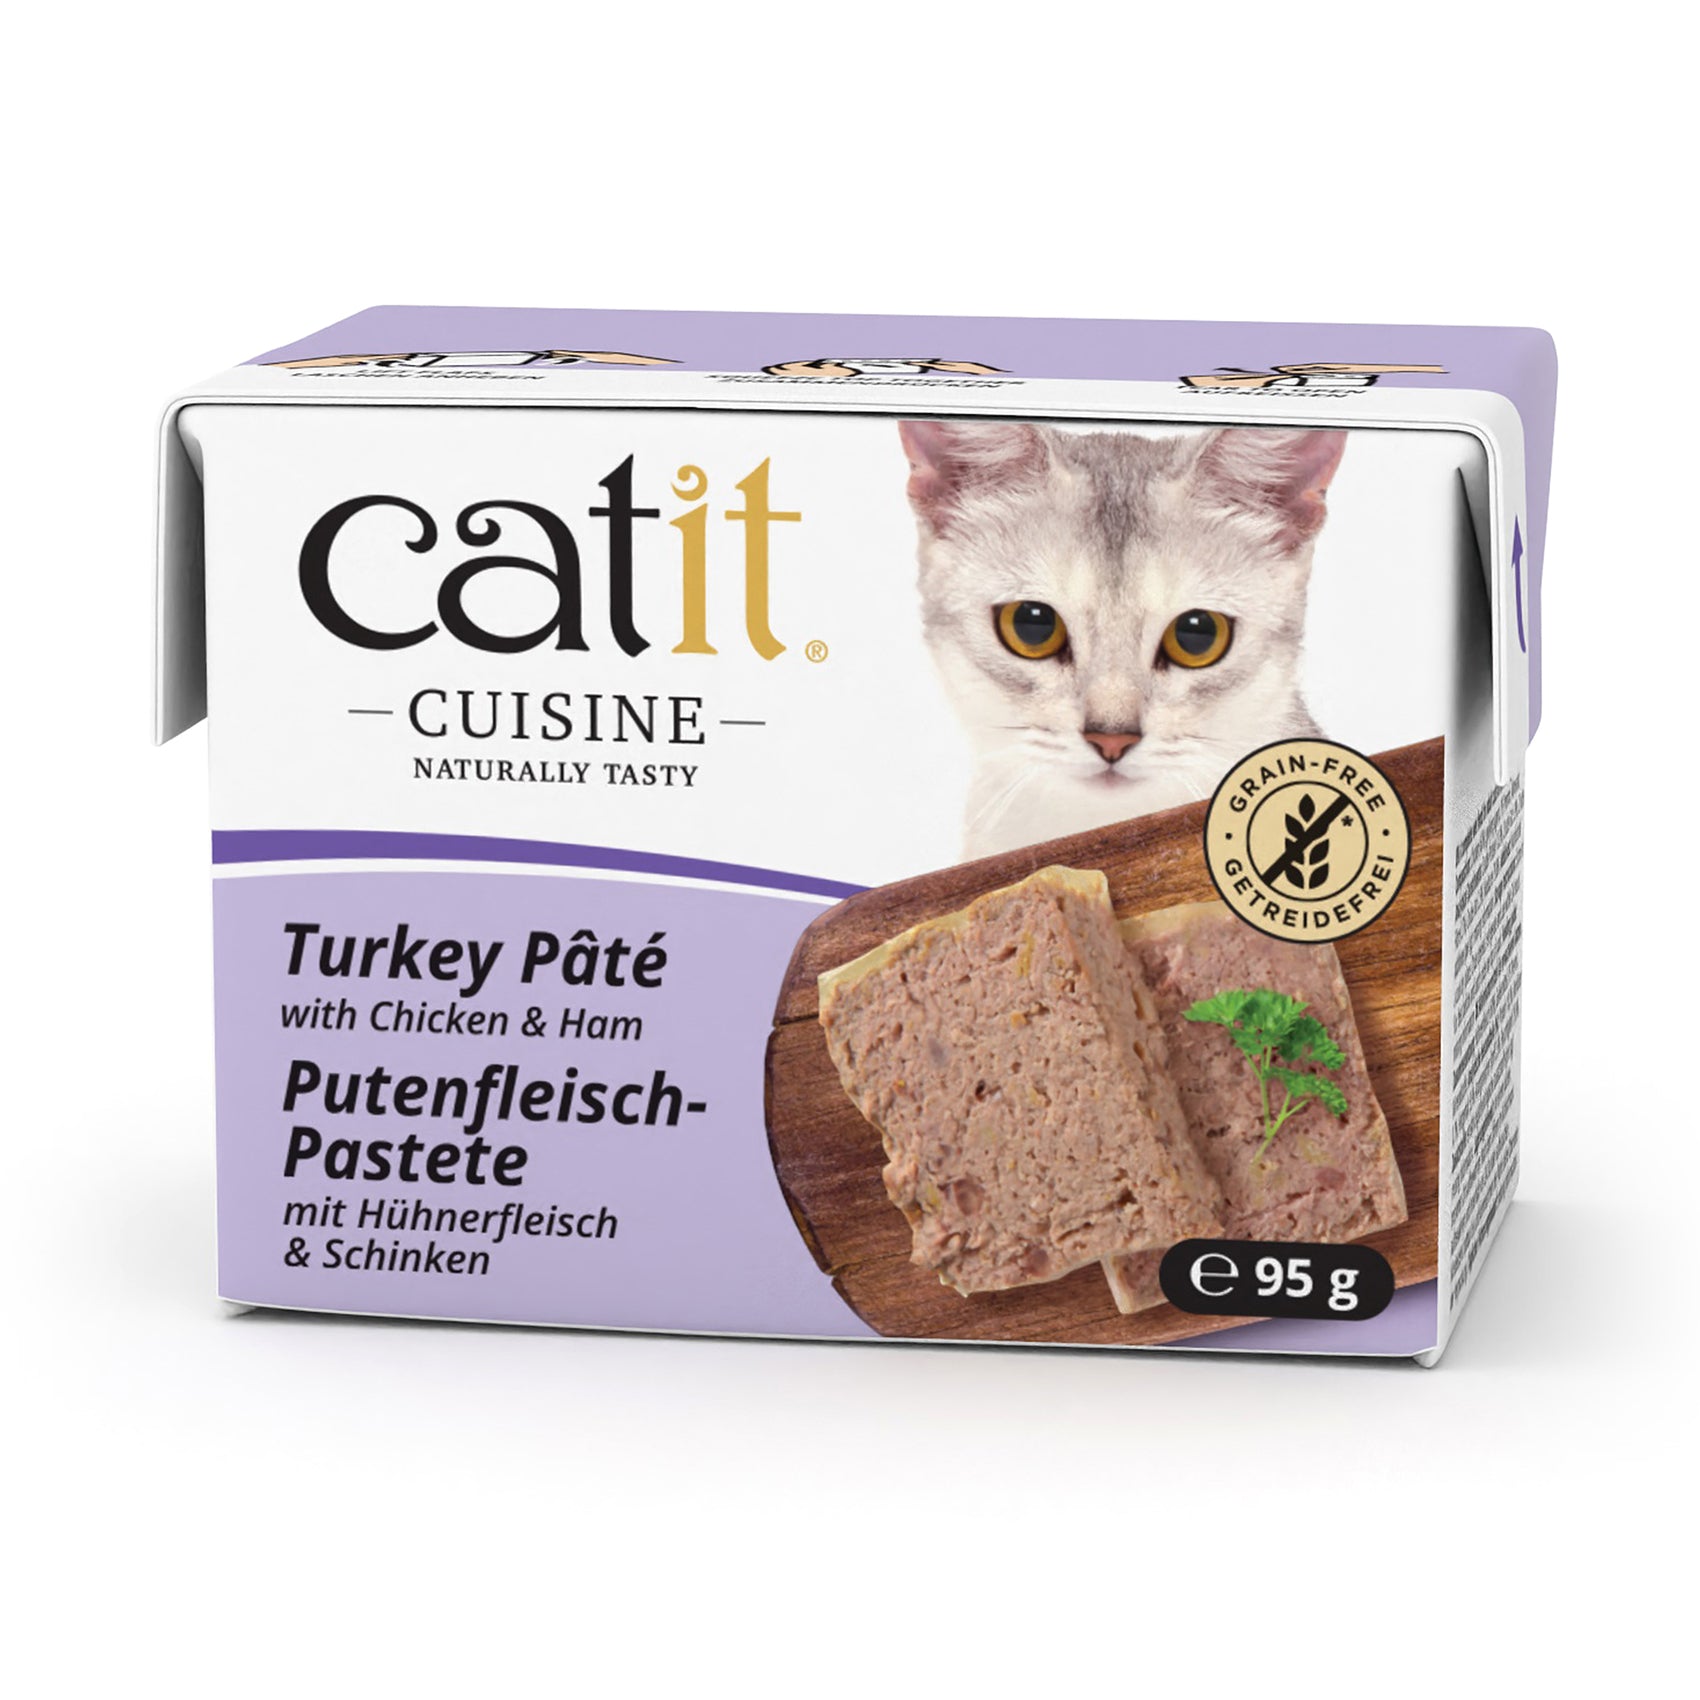 Catit Cuisine Cat Wet Food Turkey Pate 95g